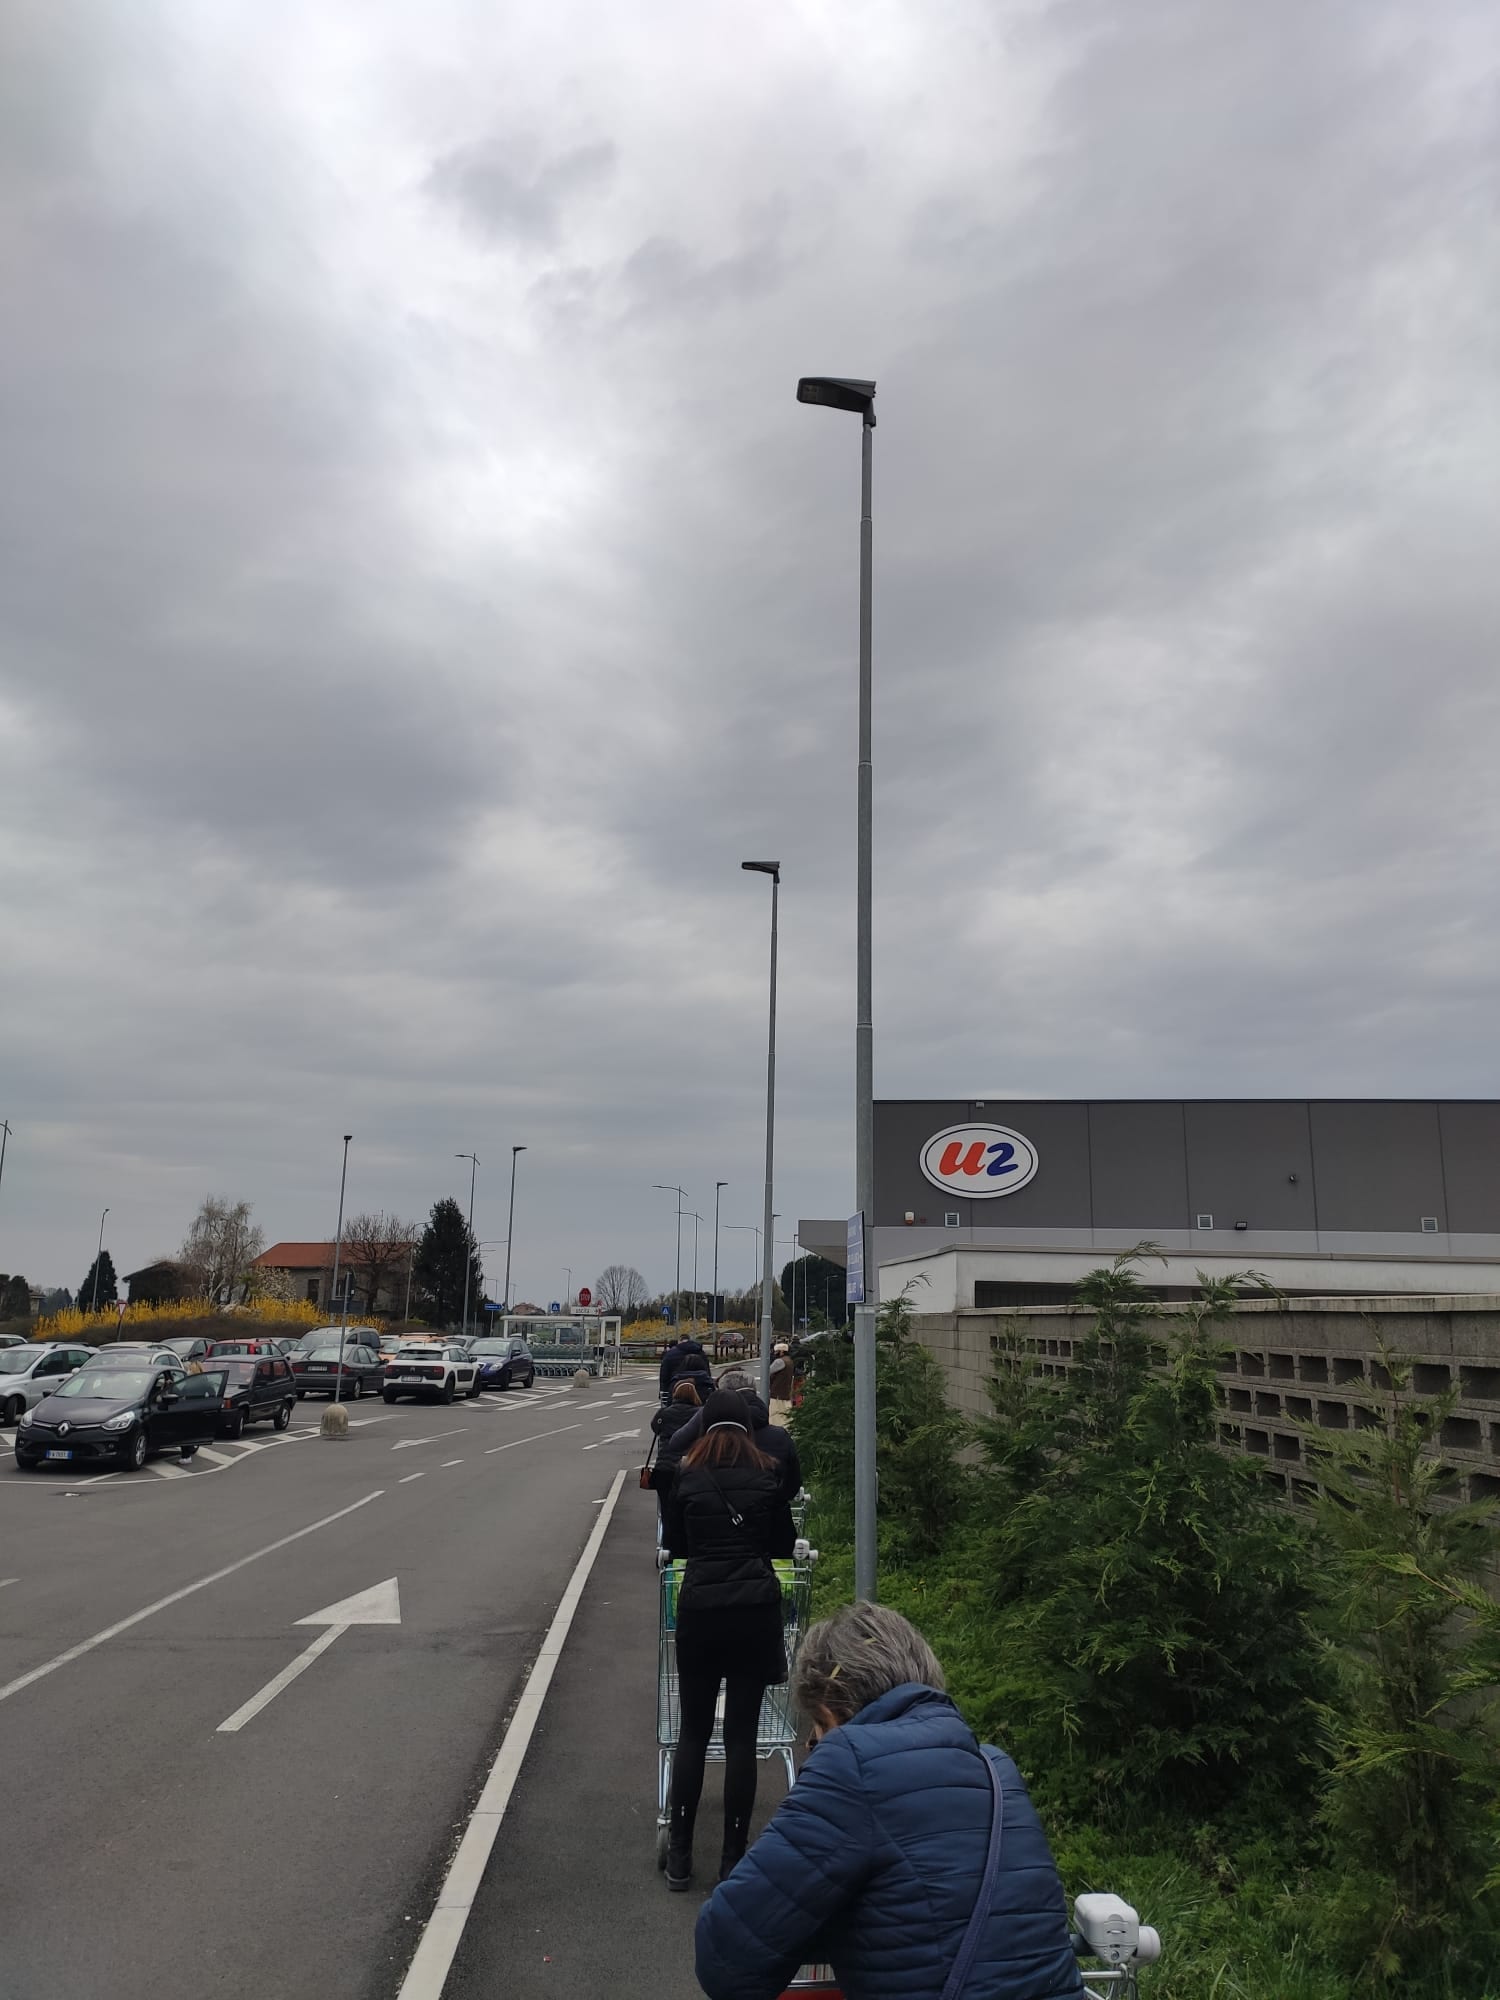 Rovello-Saronno: truffa delle monetine nel parking del supermercato U2